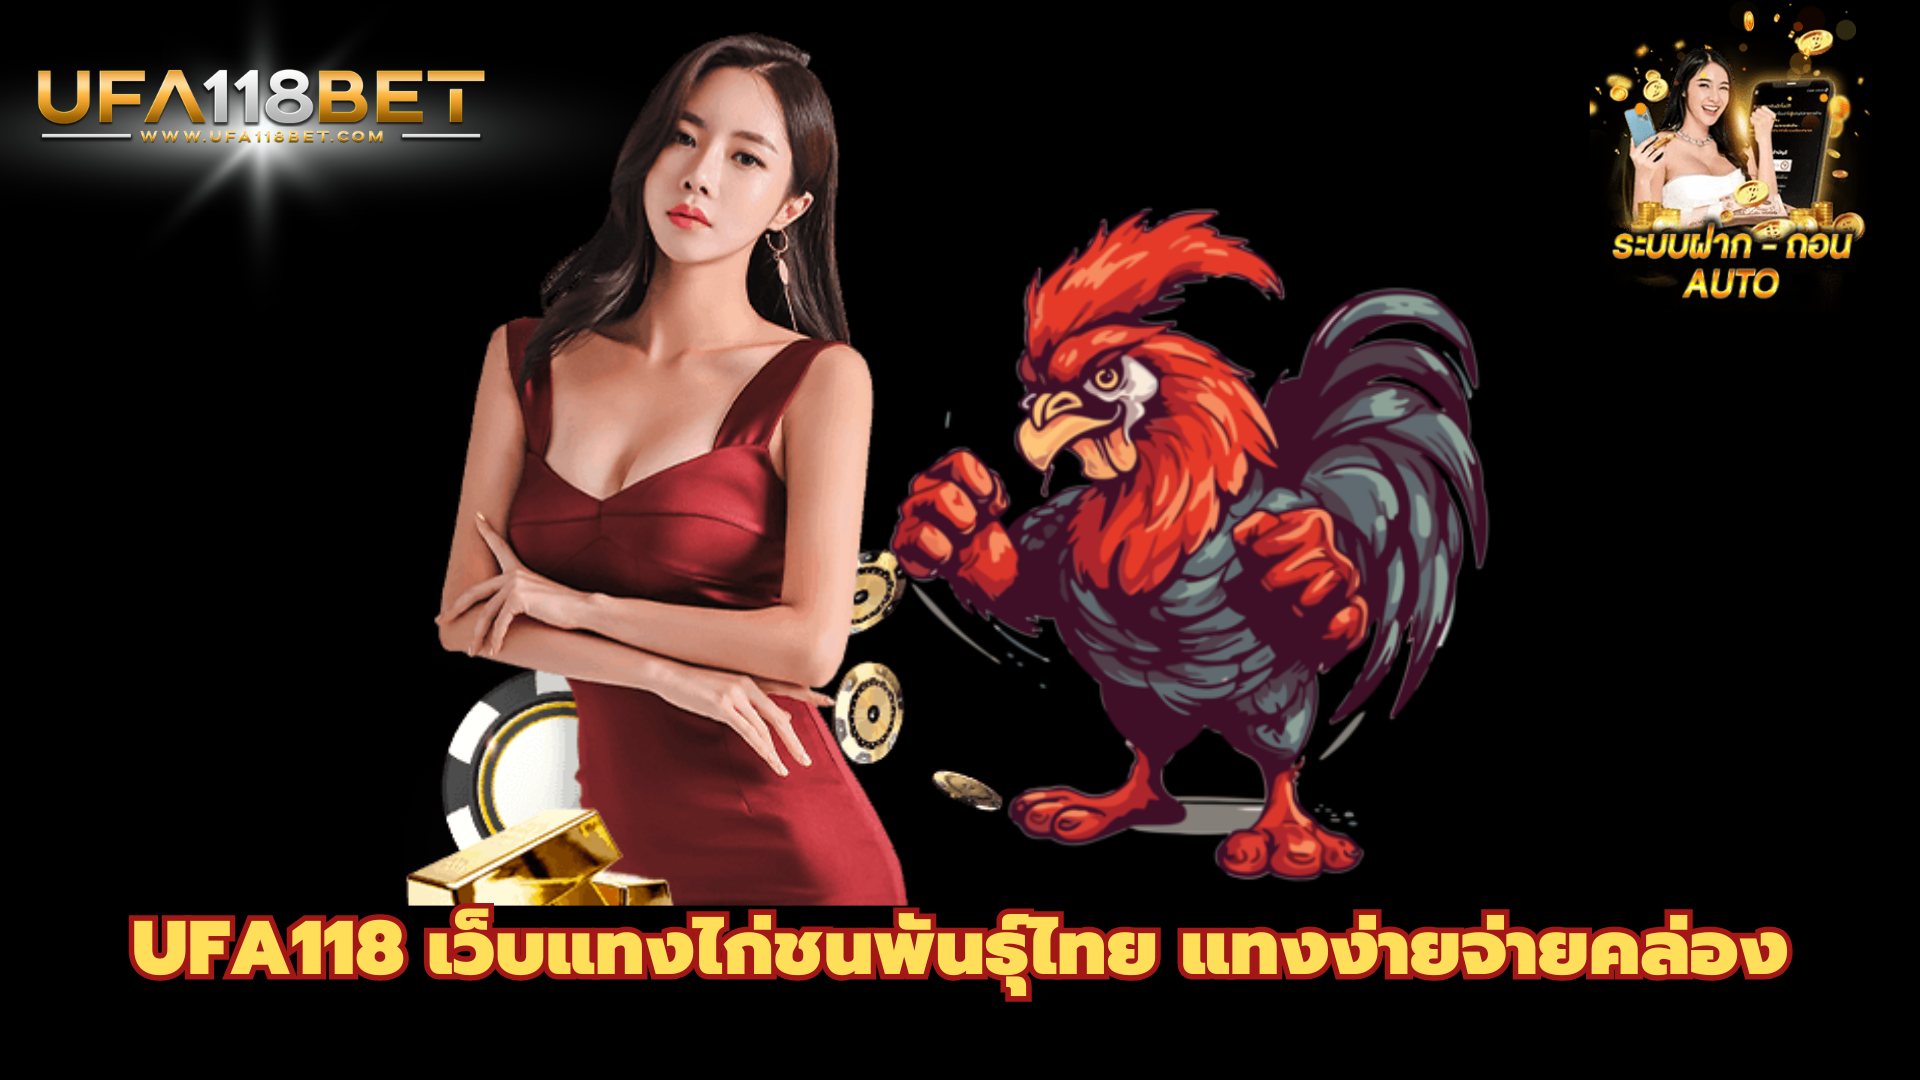 UFA118 เว็บแทงไก่ชนพันธ์ุไทย แทงง่ายจ่ายคล่อง